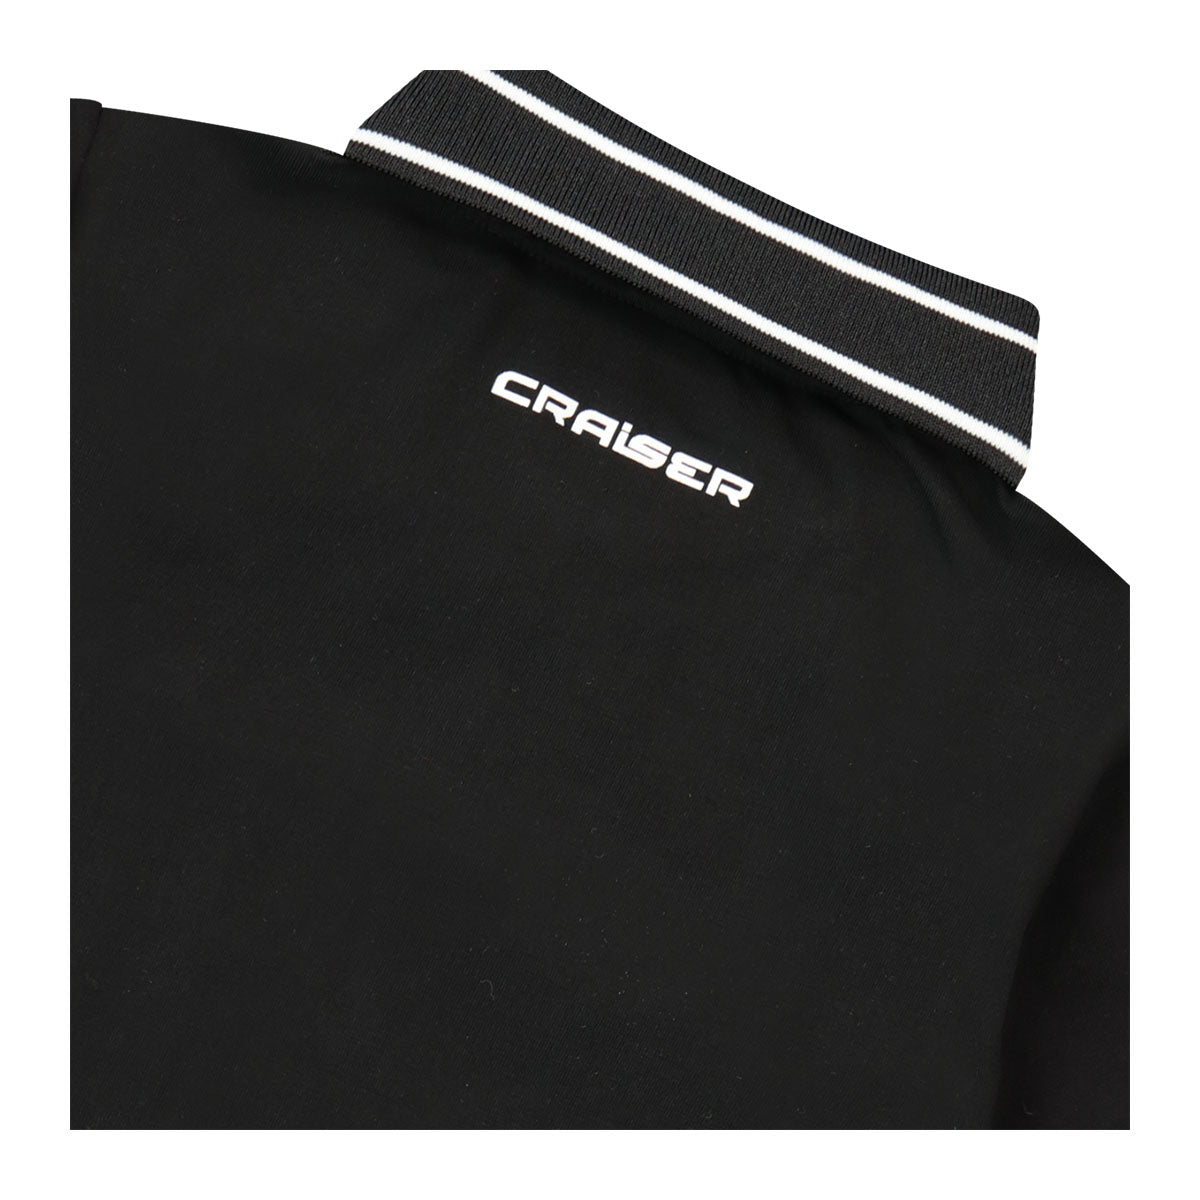 חולצת צווארון CRAISER לוגו עגול לילדים